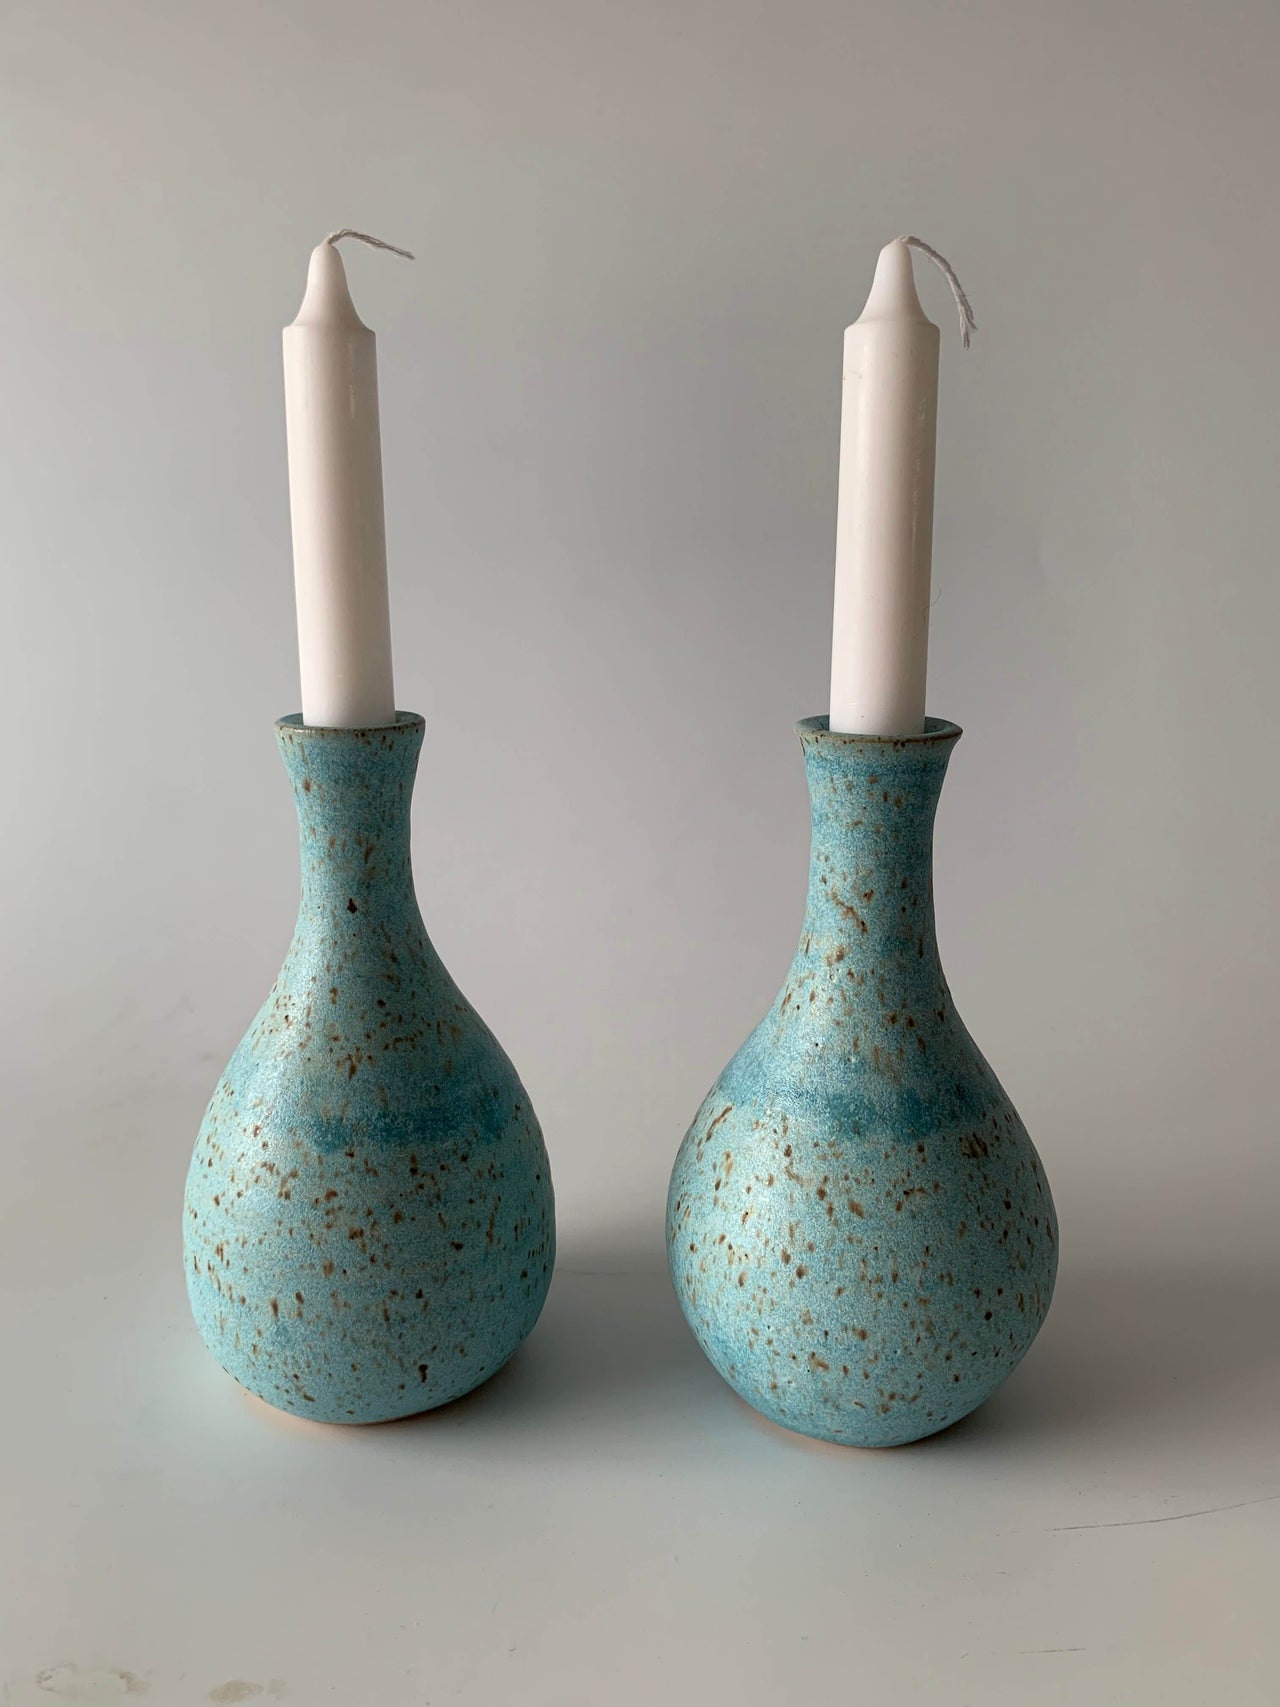 Rachael Pots Candlesticks Ceramic Shabbat Candlesticks by Rachael Pots - Robin's Egg Blue